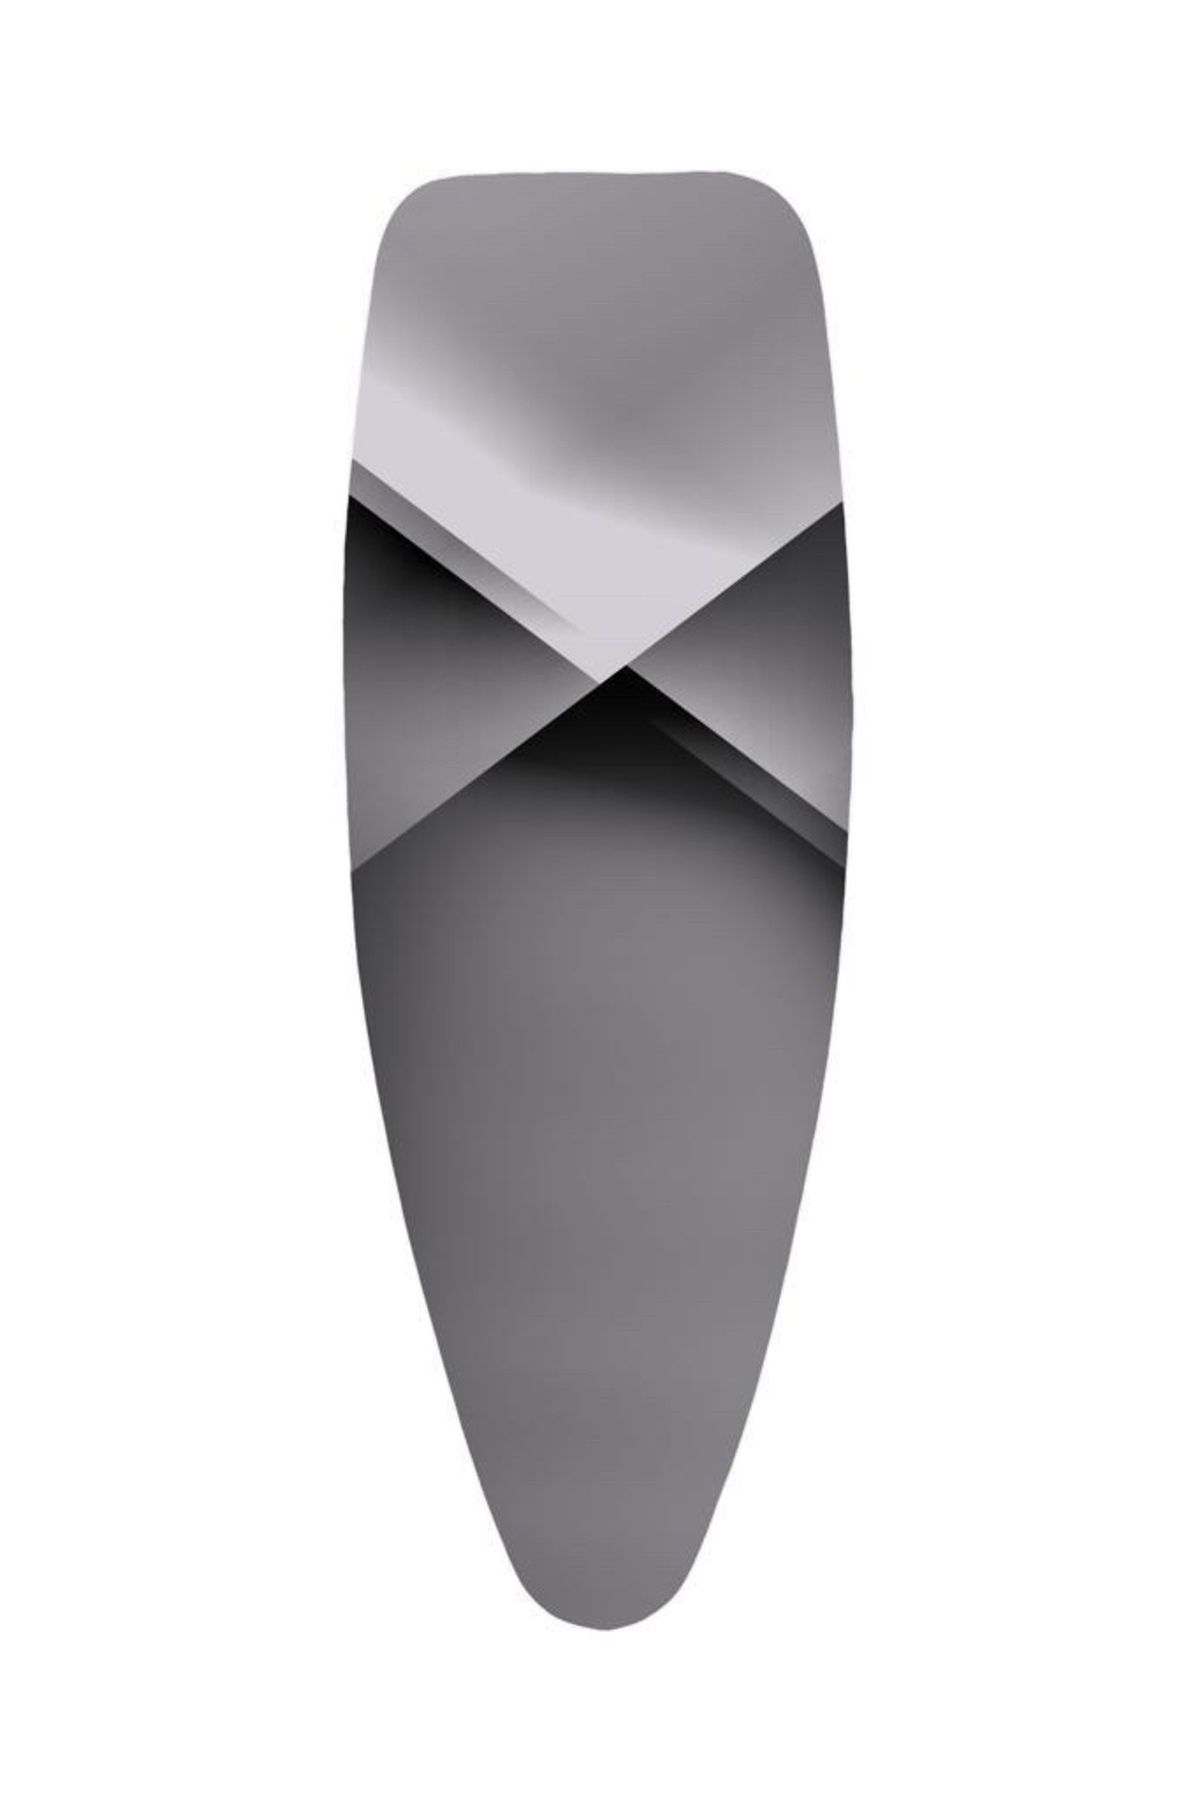 GERCELLA Xxl(57X162 CM) Prestige Ütü Masası Kılıfı Bezi Örtüsü Grey